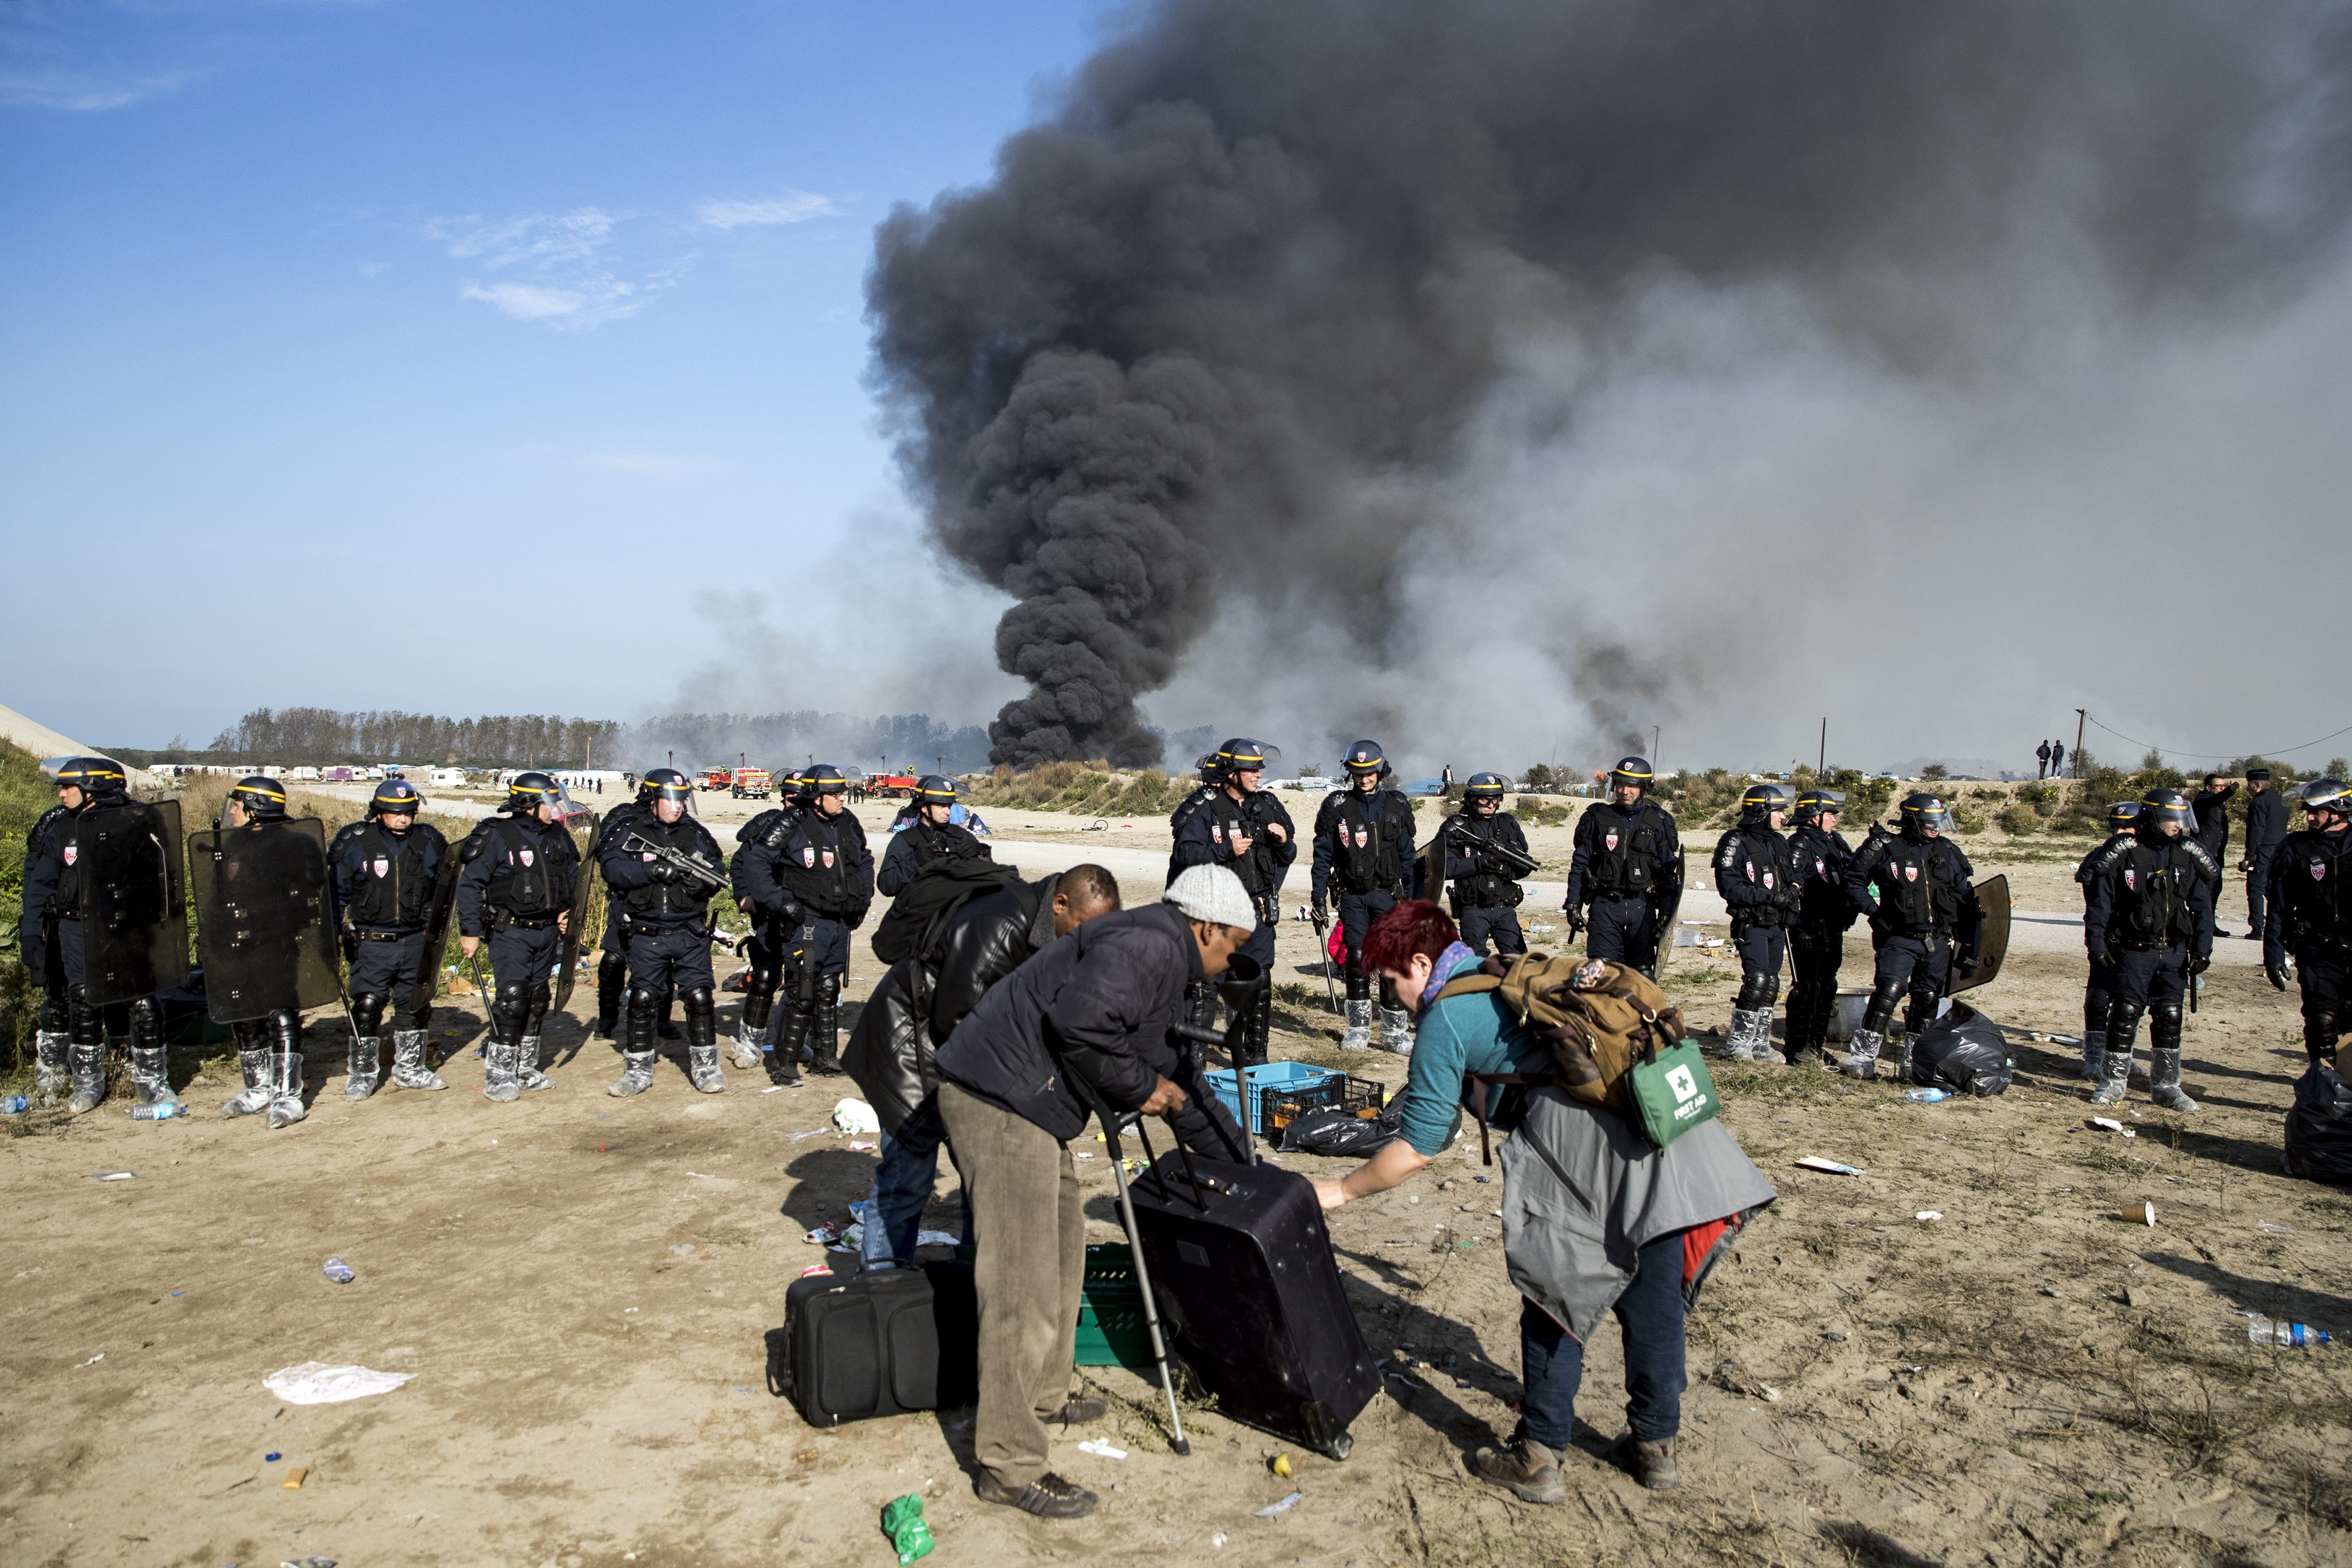 Ewakuacja migrantów z obozowiska Calais we Francji po podpaleniu. fot. EPA/ETIENNE LAURENT 